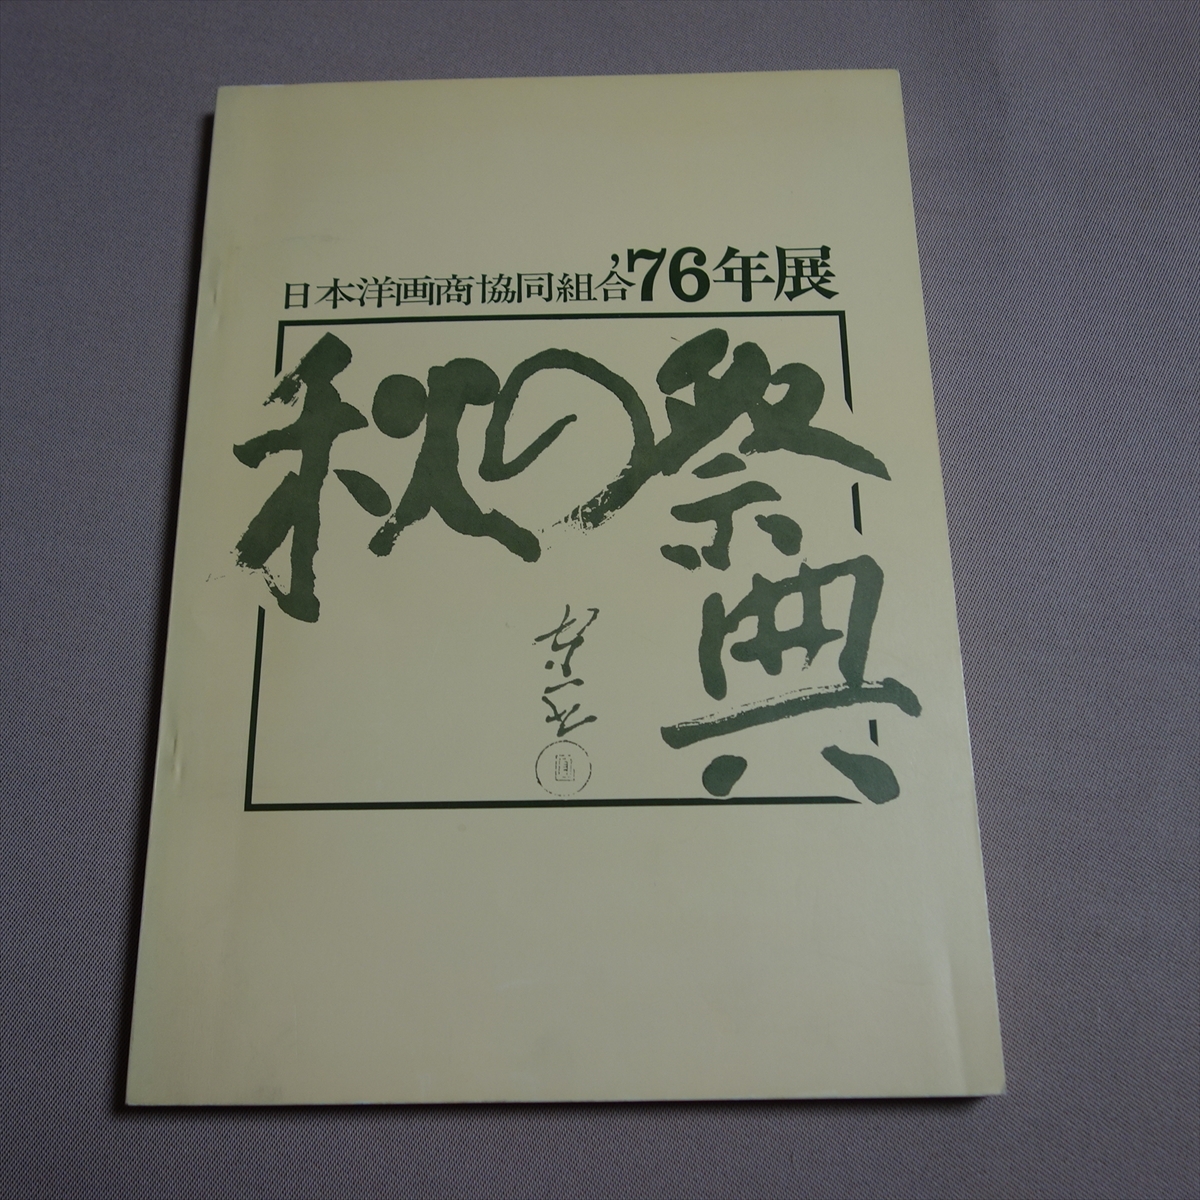 Asociación de marchantes de arte occidental de Japón Exposición '76 Festival de otoño / Catálogo Showa, Cuadro, Libro de arte, Recopilación, Catalogar